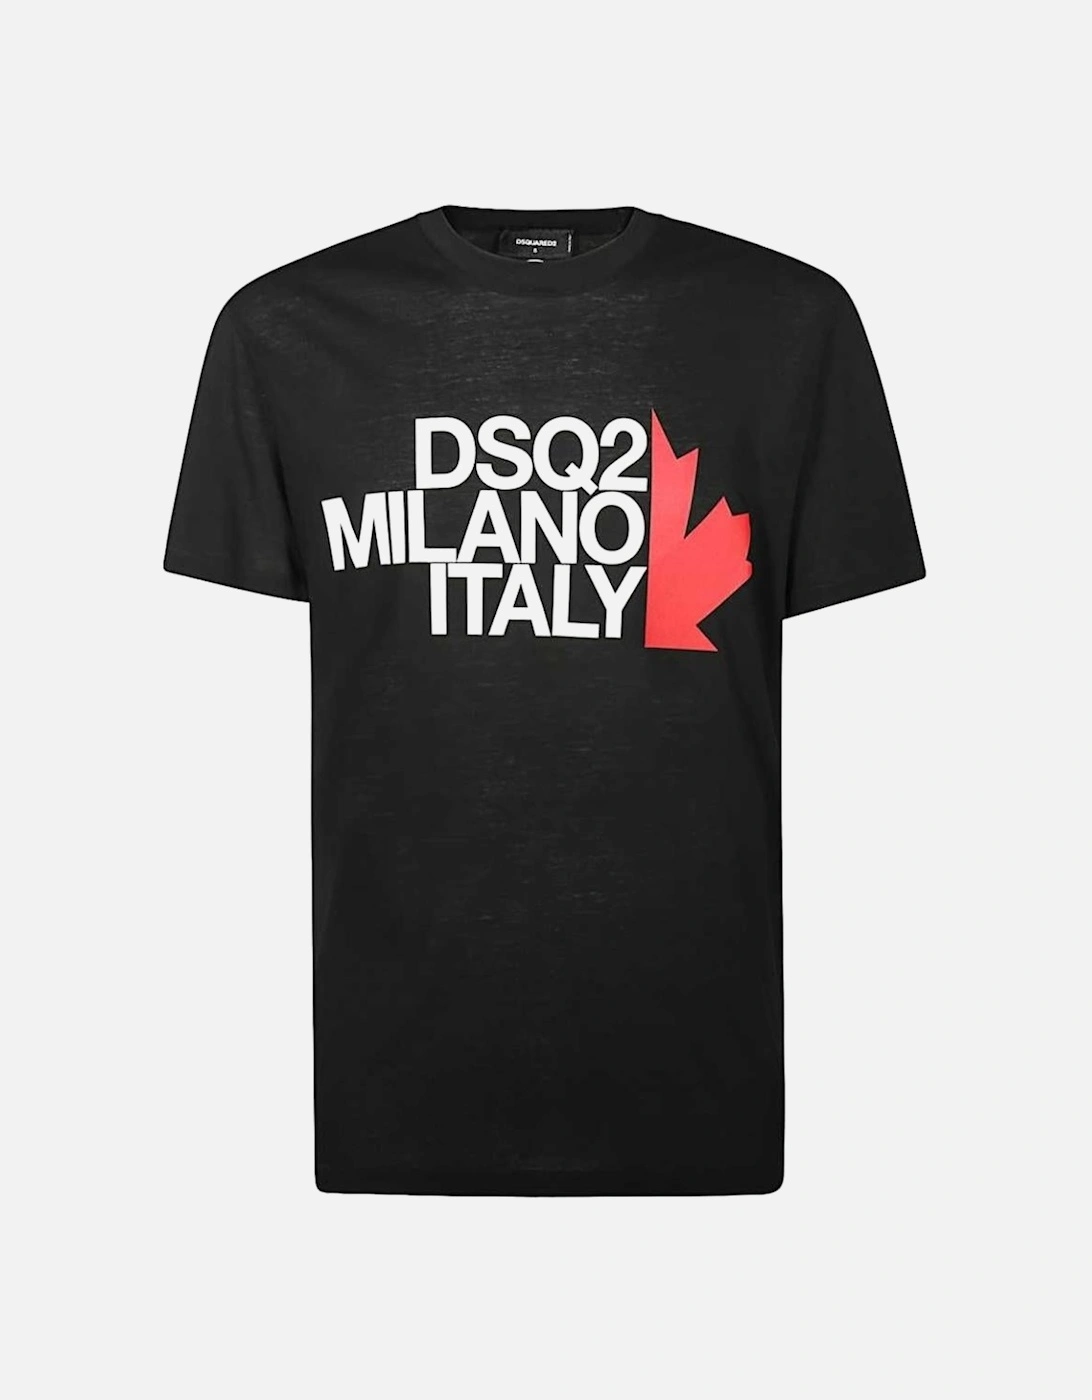 DSQ2 Milano Italy Black T-Shirt